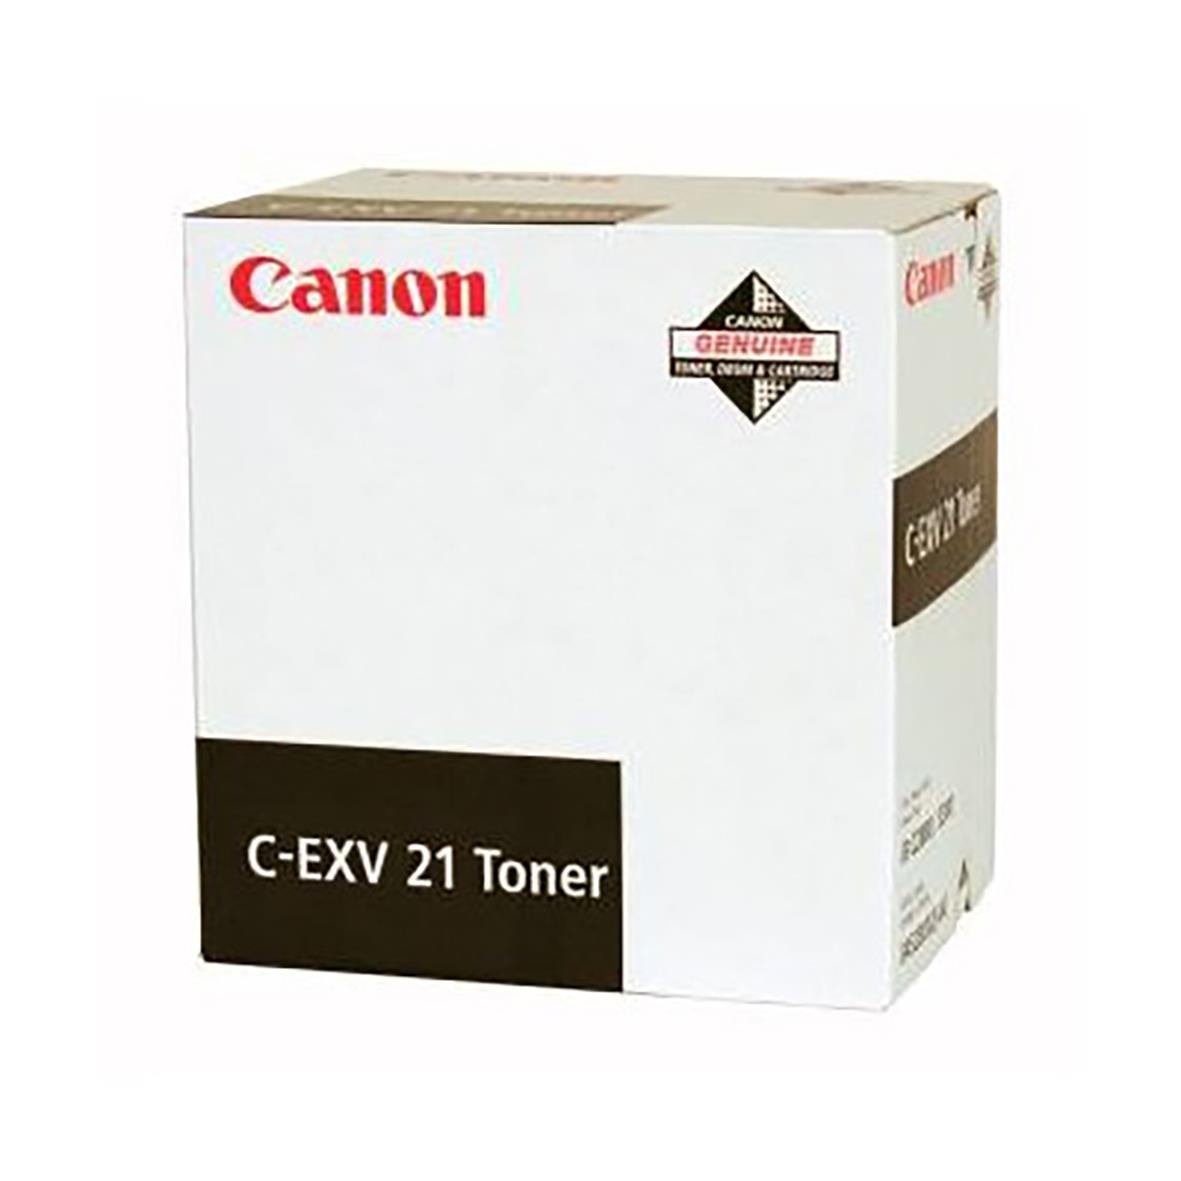 Lasertoner Canon C-Exv21 0452B002 Svart 32110124